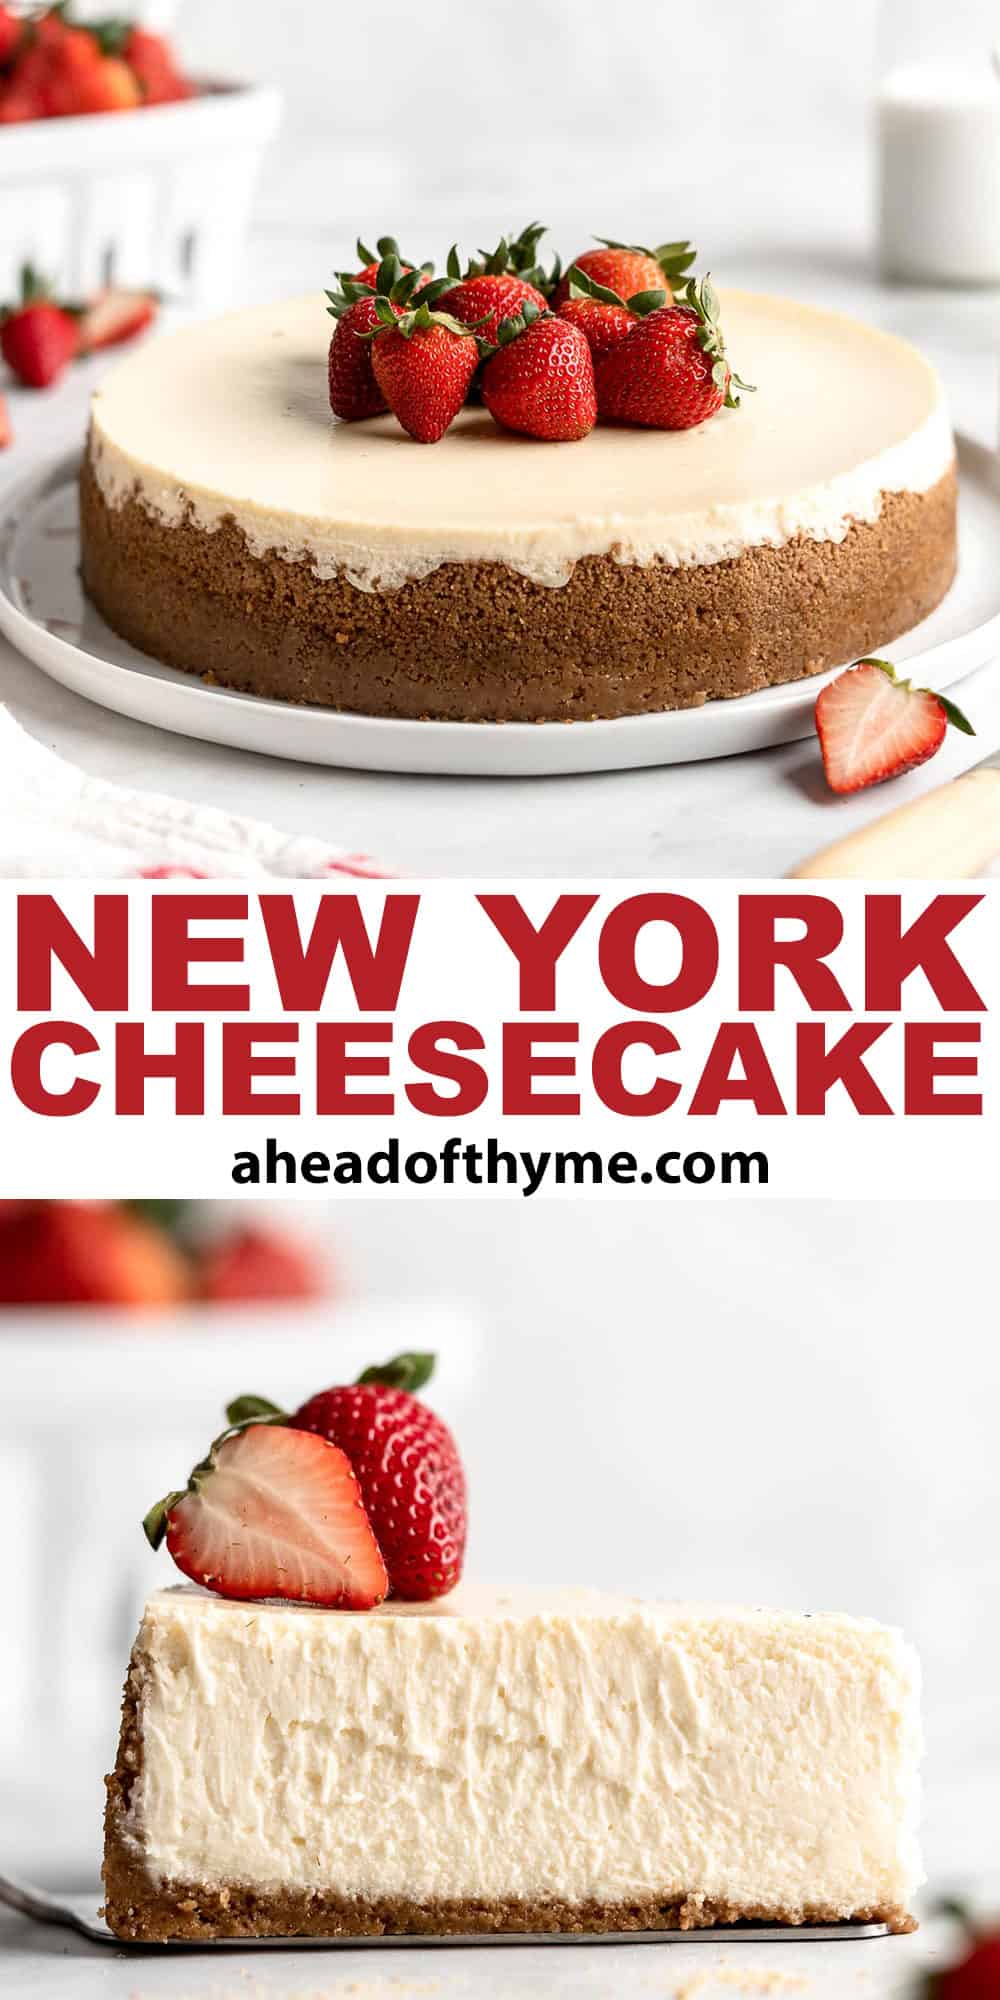 Classic New York Cheesecake